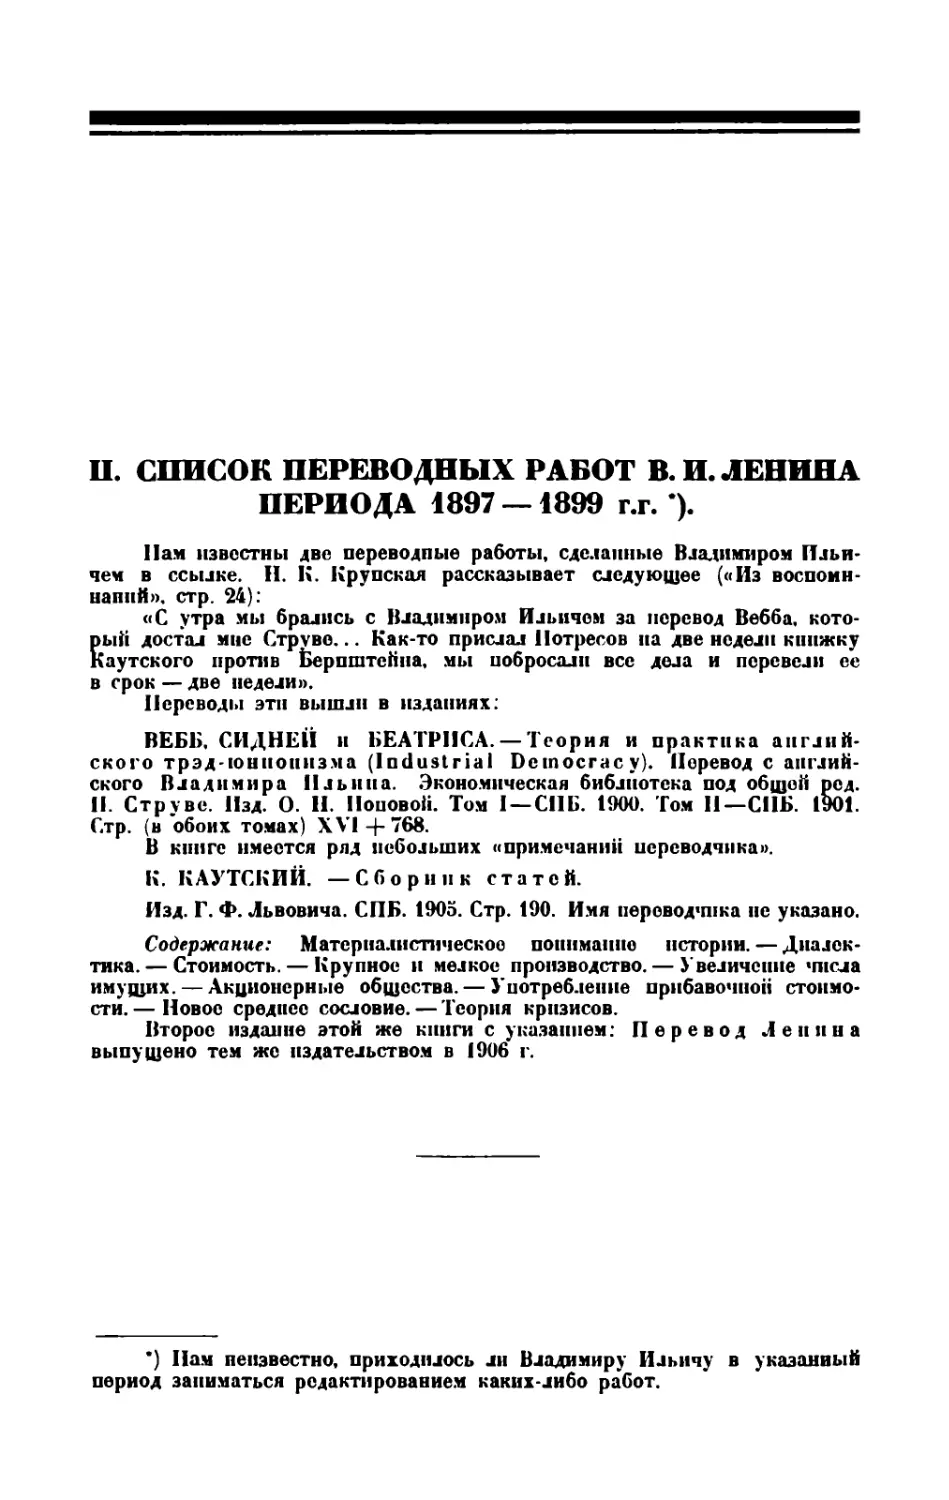 II. Список переводных работ В. И. Ленина периода 1897—1899 г.г.